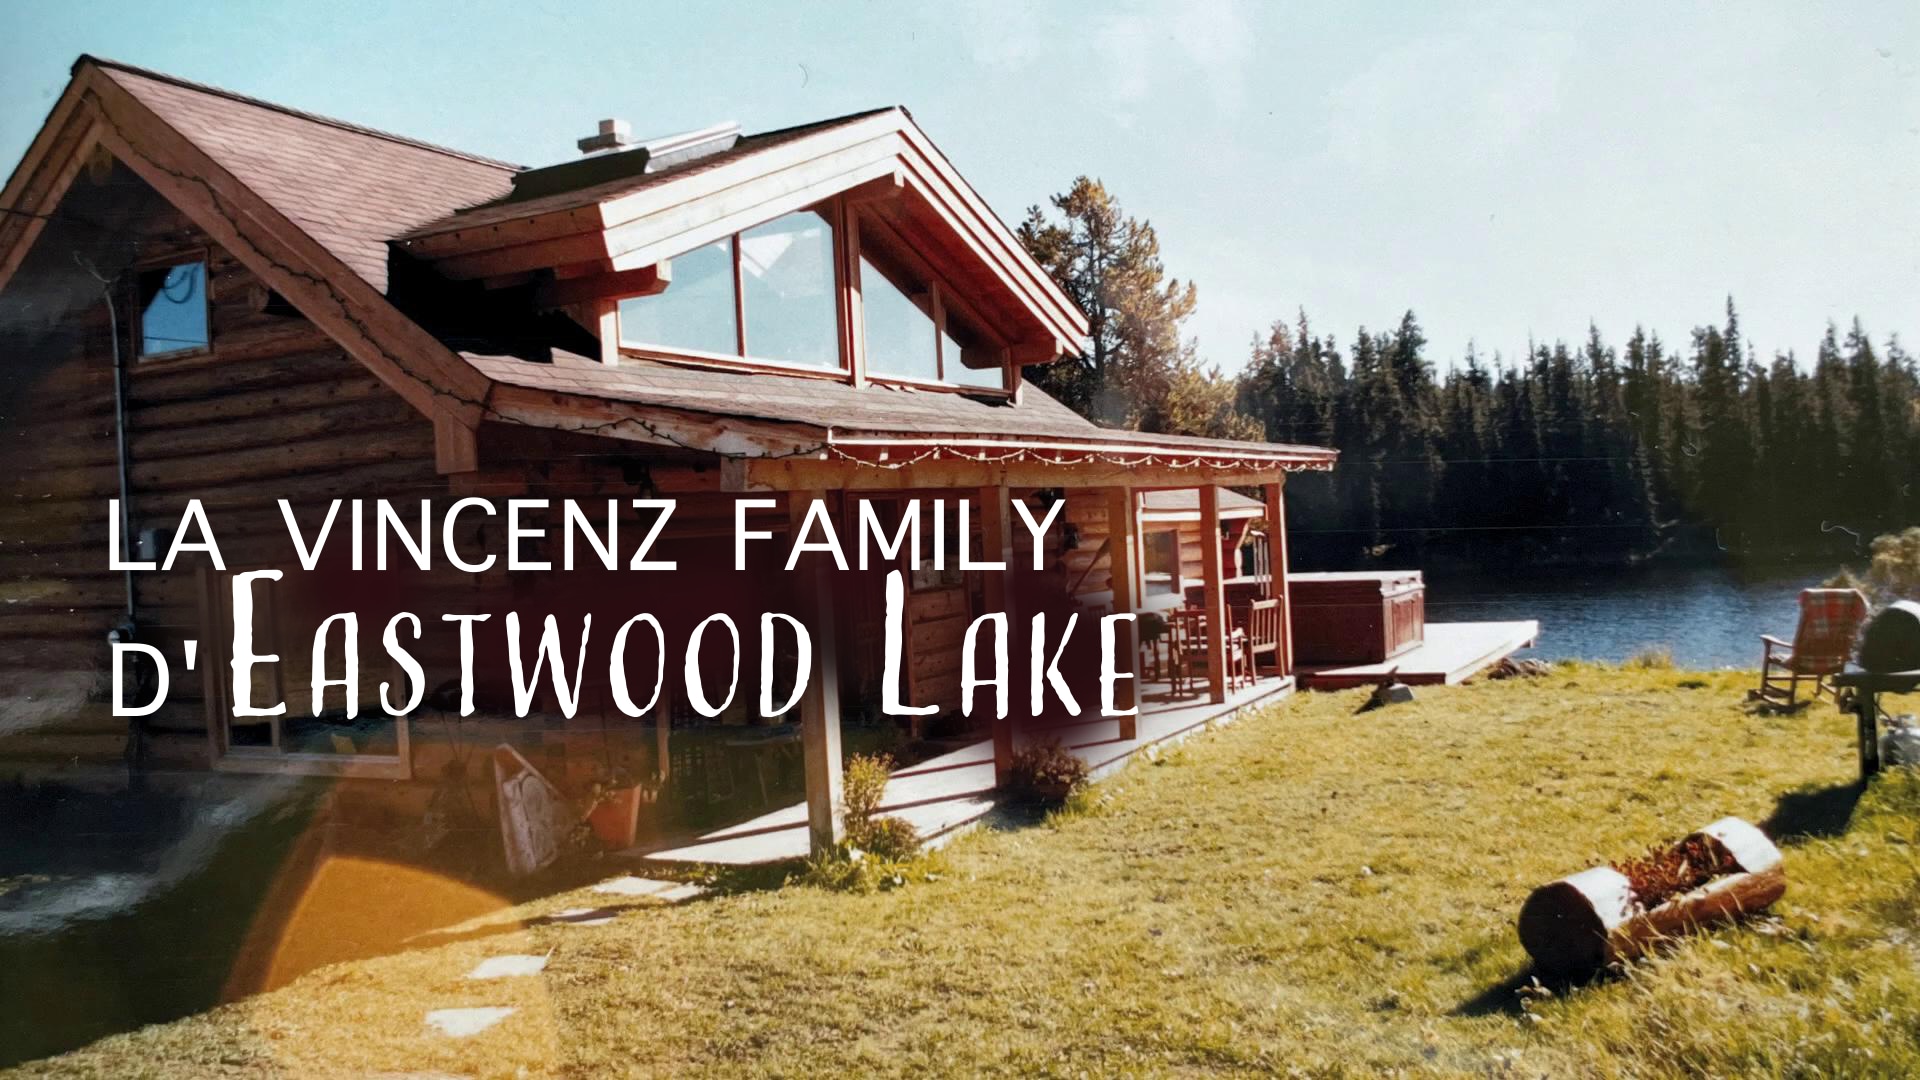 La Vincenz Family d'Eastwood Lake